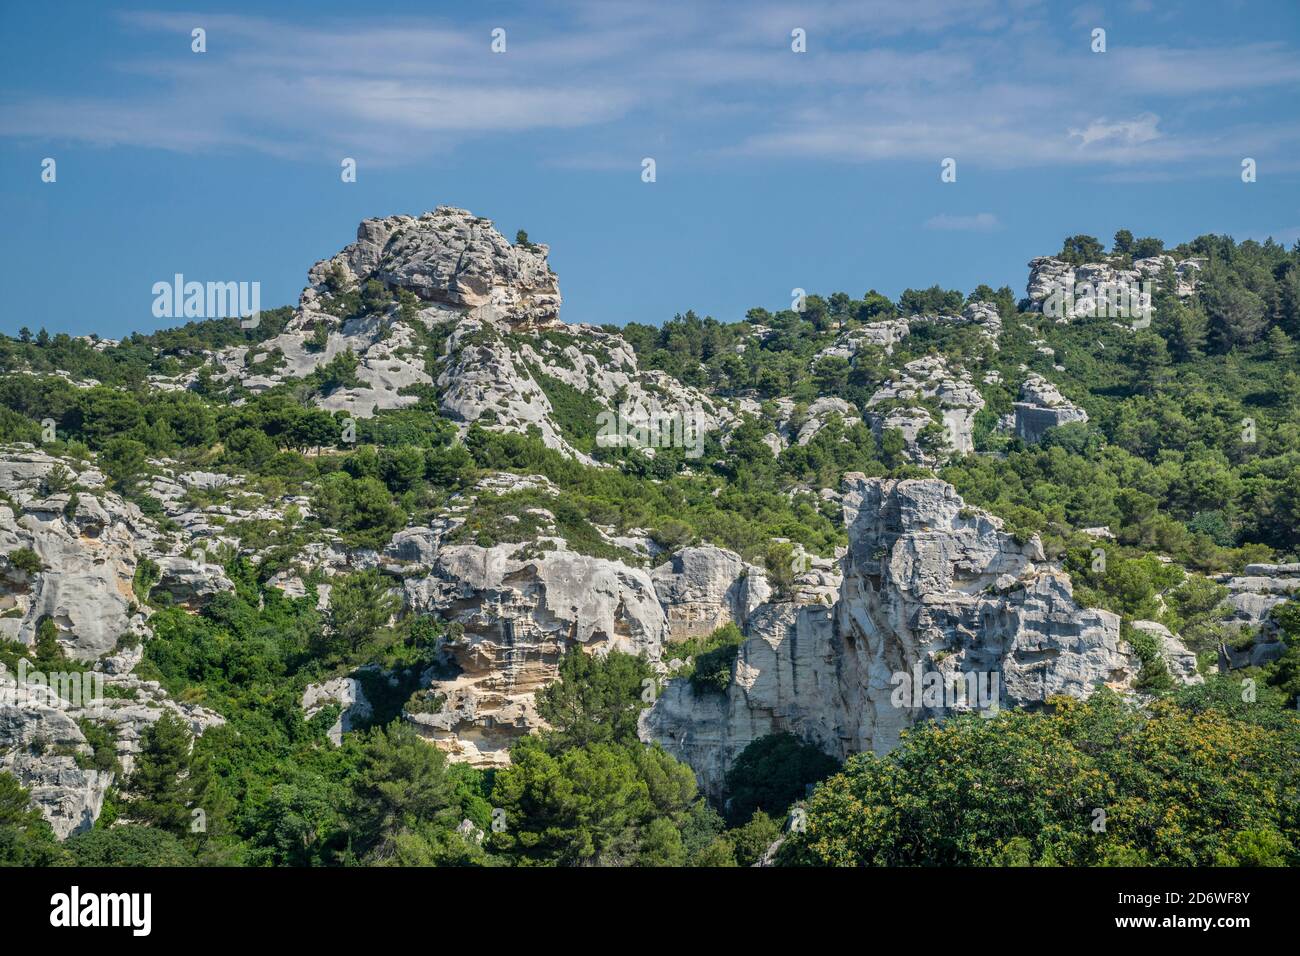 limestone cliffs at Les Baux-de-Provence in the Alpilles mountains, Bouches-du-Rhône department, Provence, Southern France Stock Photo